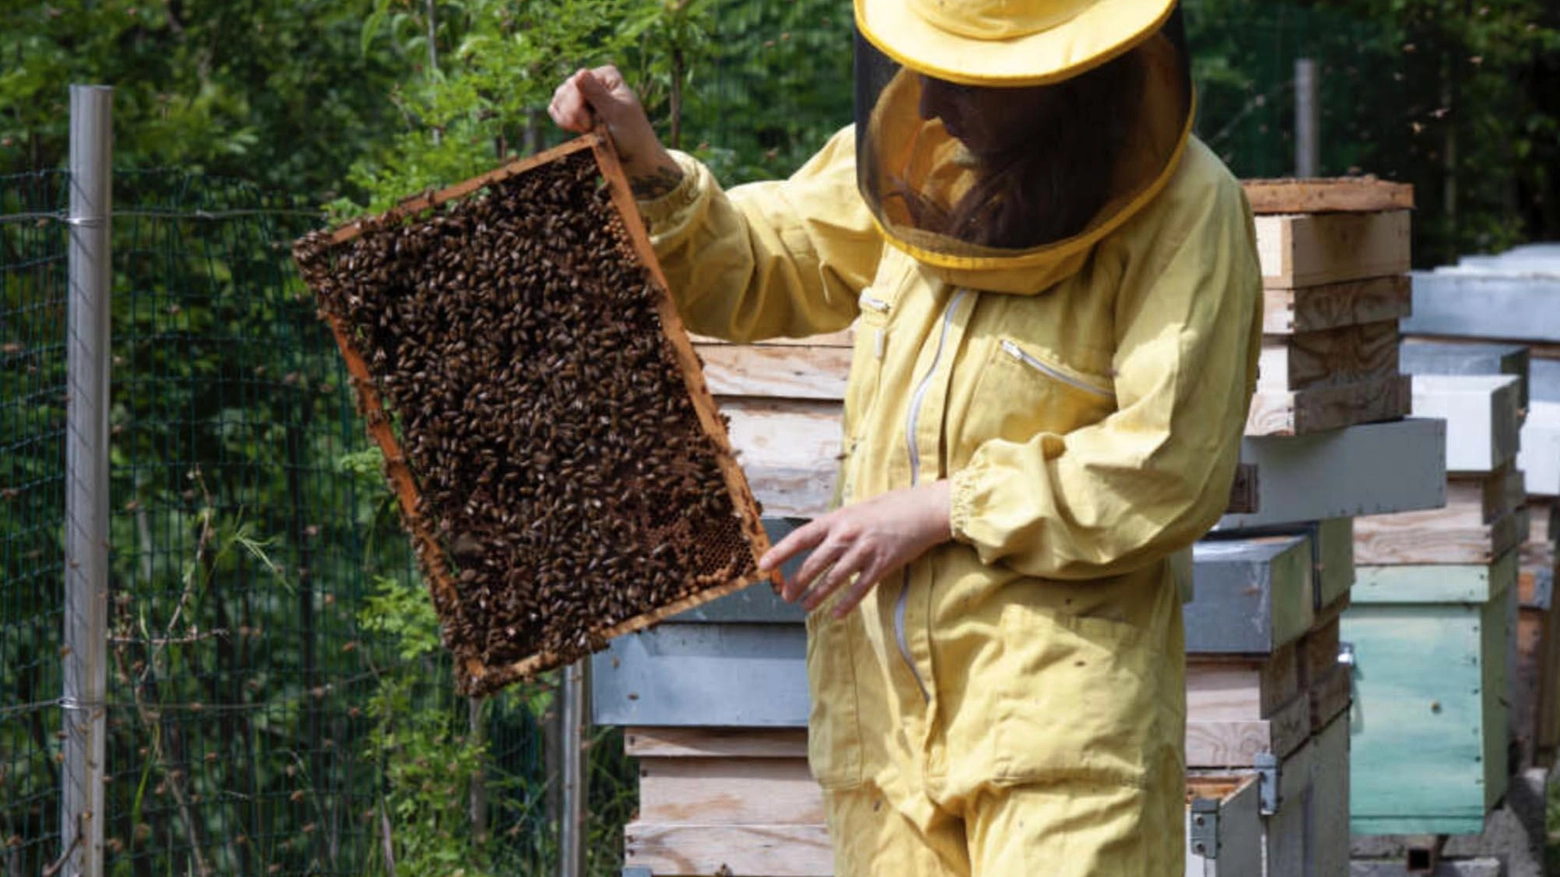 Il sogno di Vimercate: diventare Città delle api